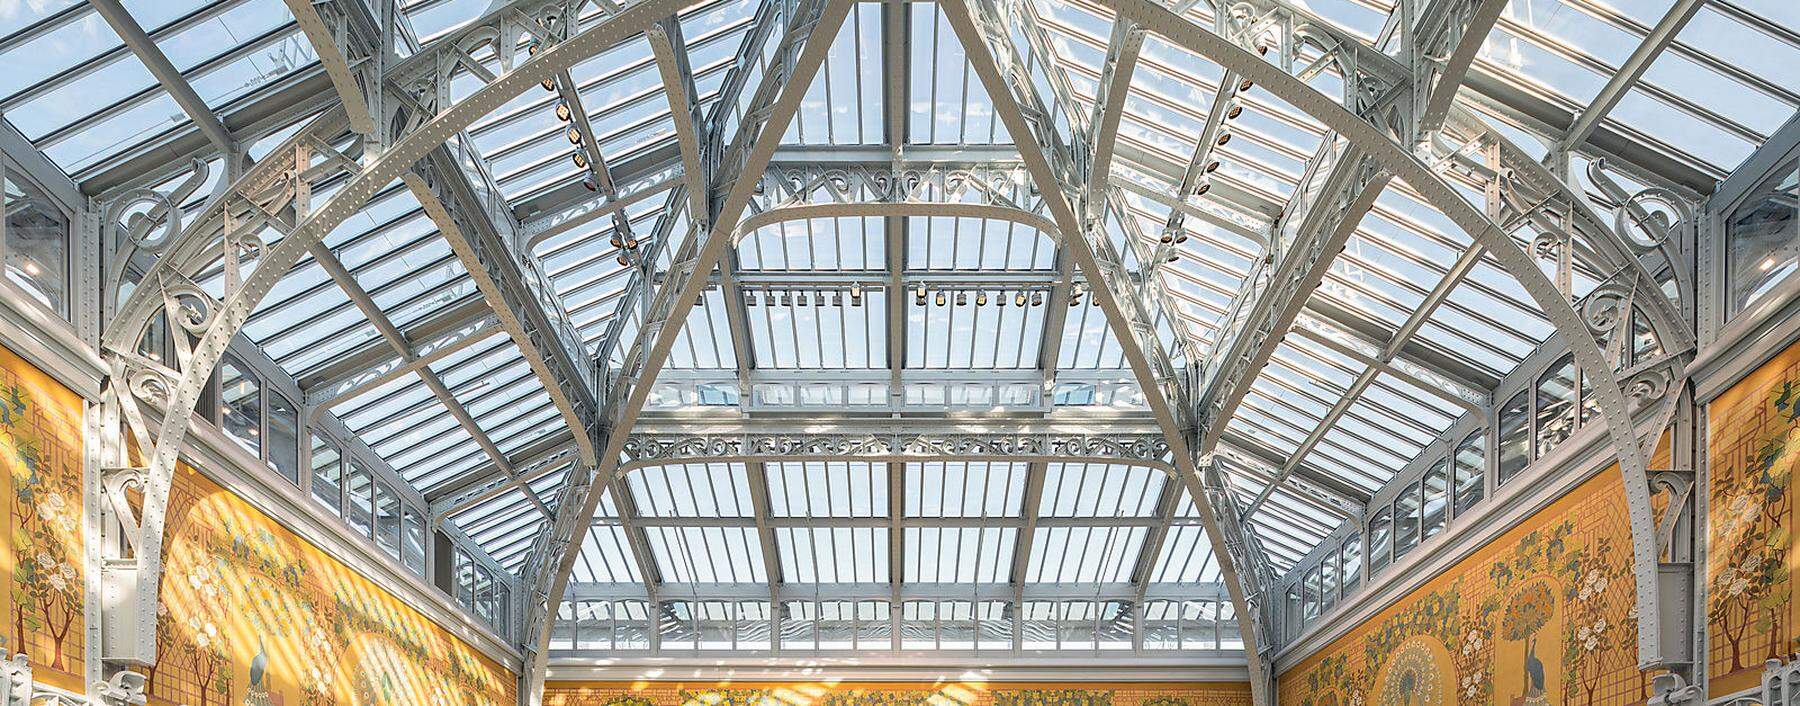 Das historische Glasdach strahlt wieder über dem noblen Pariser Kaufhaus.